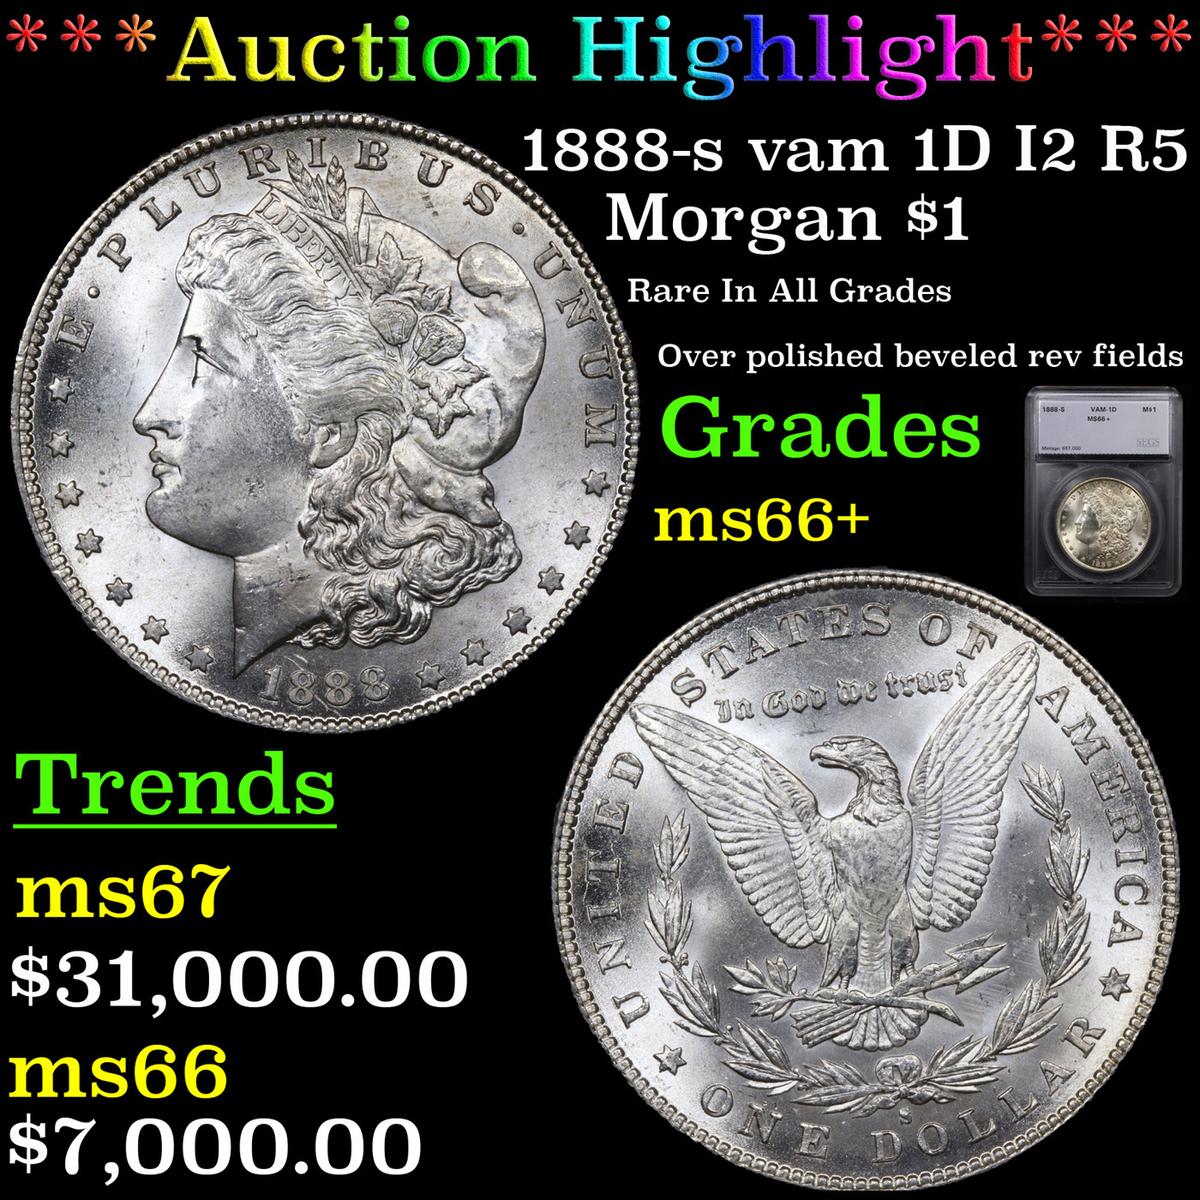 ***Auction Highlight*** 1888-s vam 1D I2 R5 Morgan Dollar $1 Graded ms66+ By SEGS (fc)